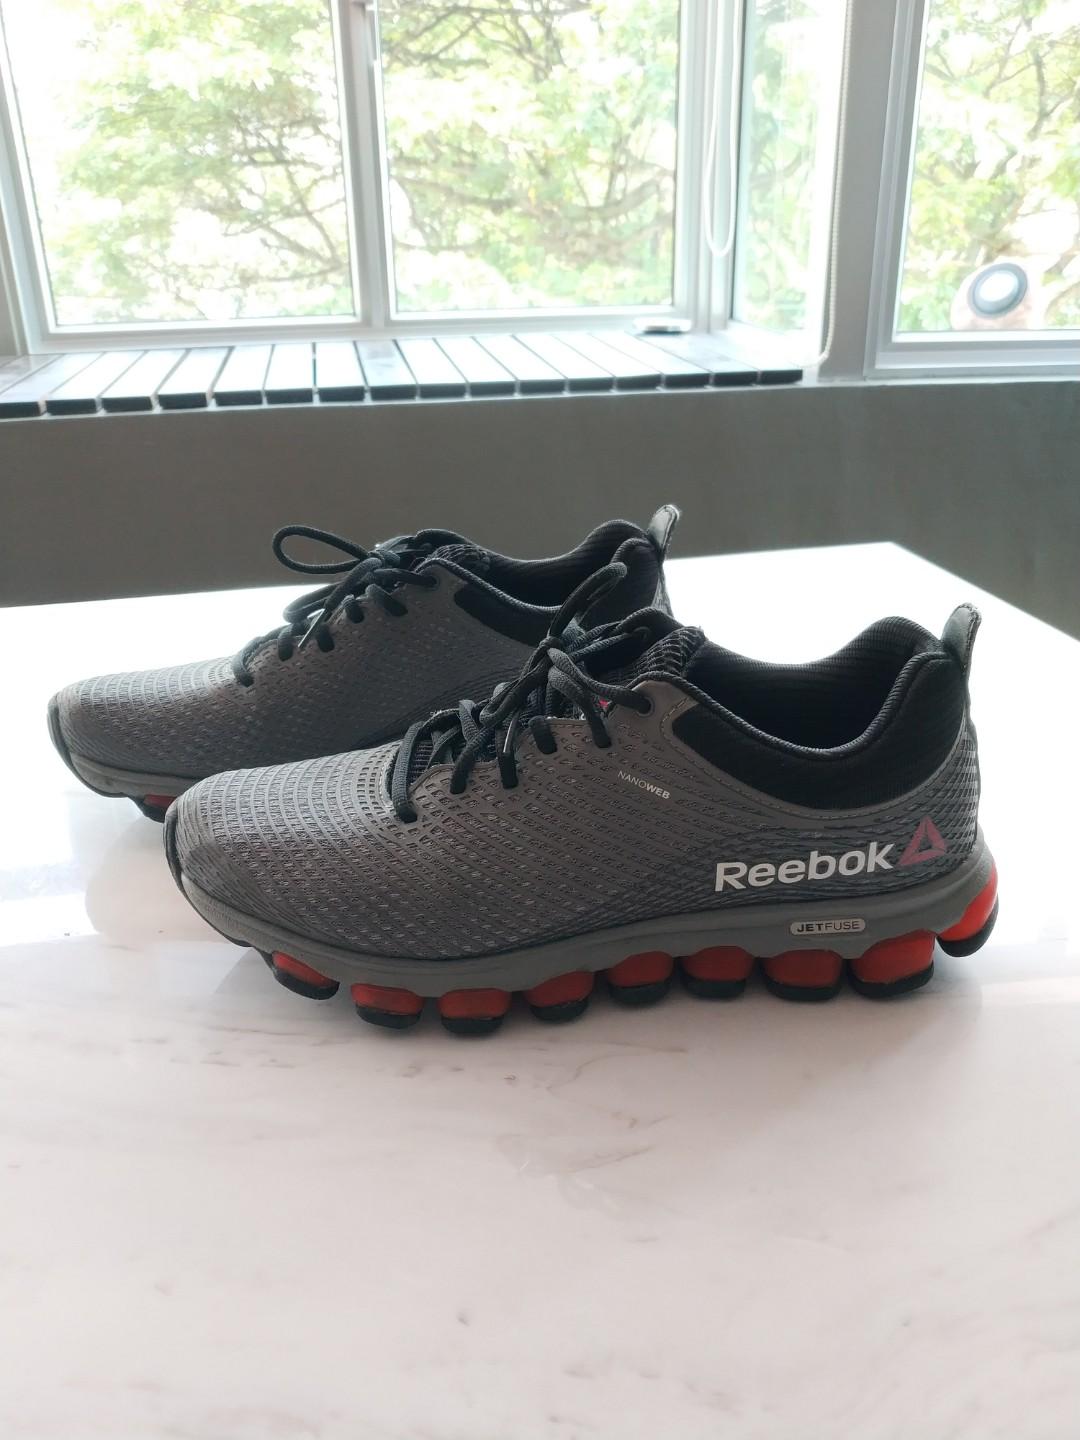 reebok men's jetfuse running shoe